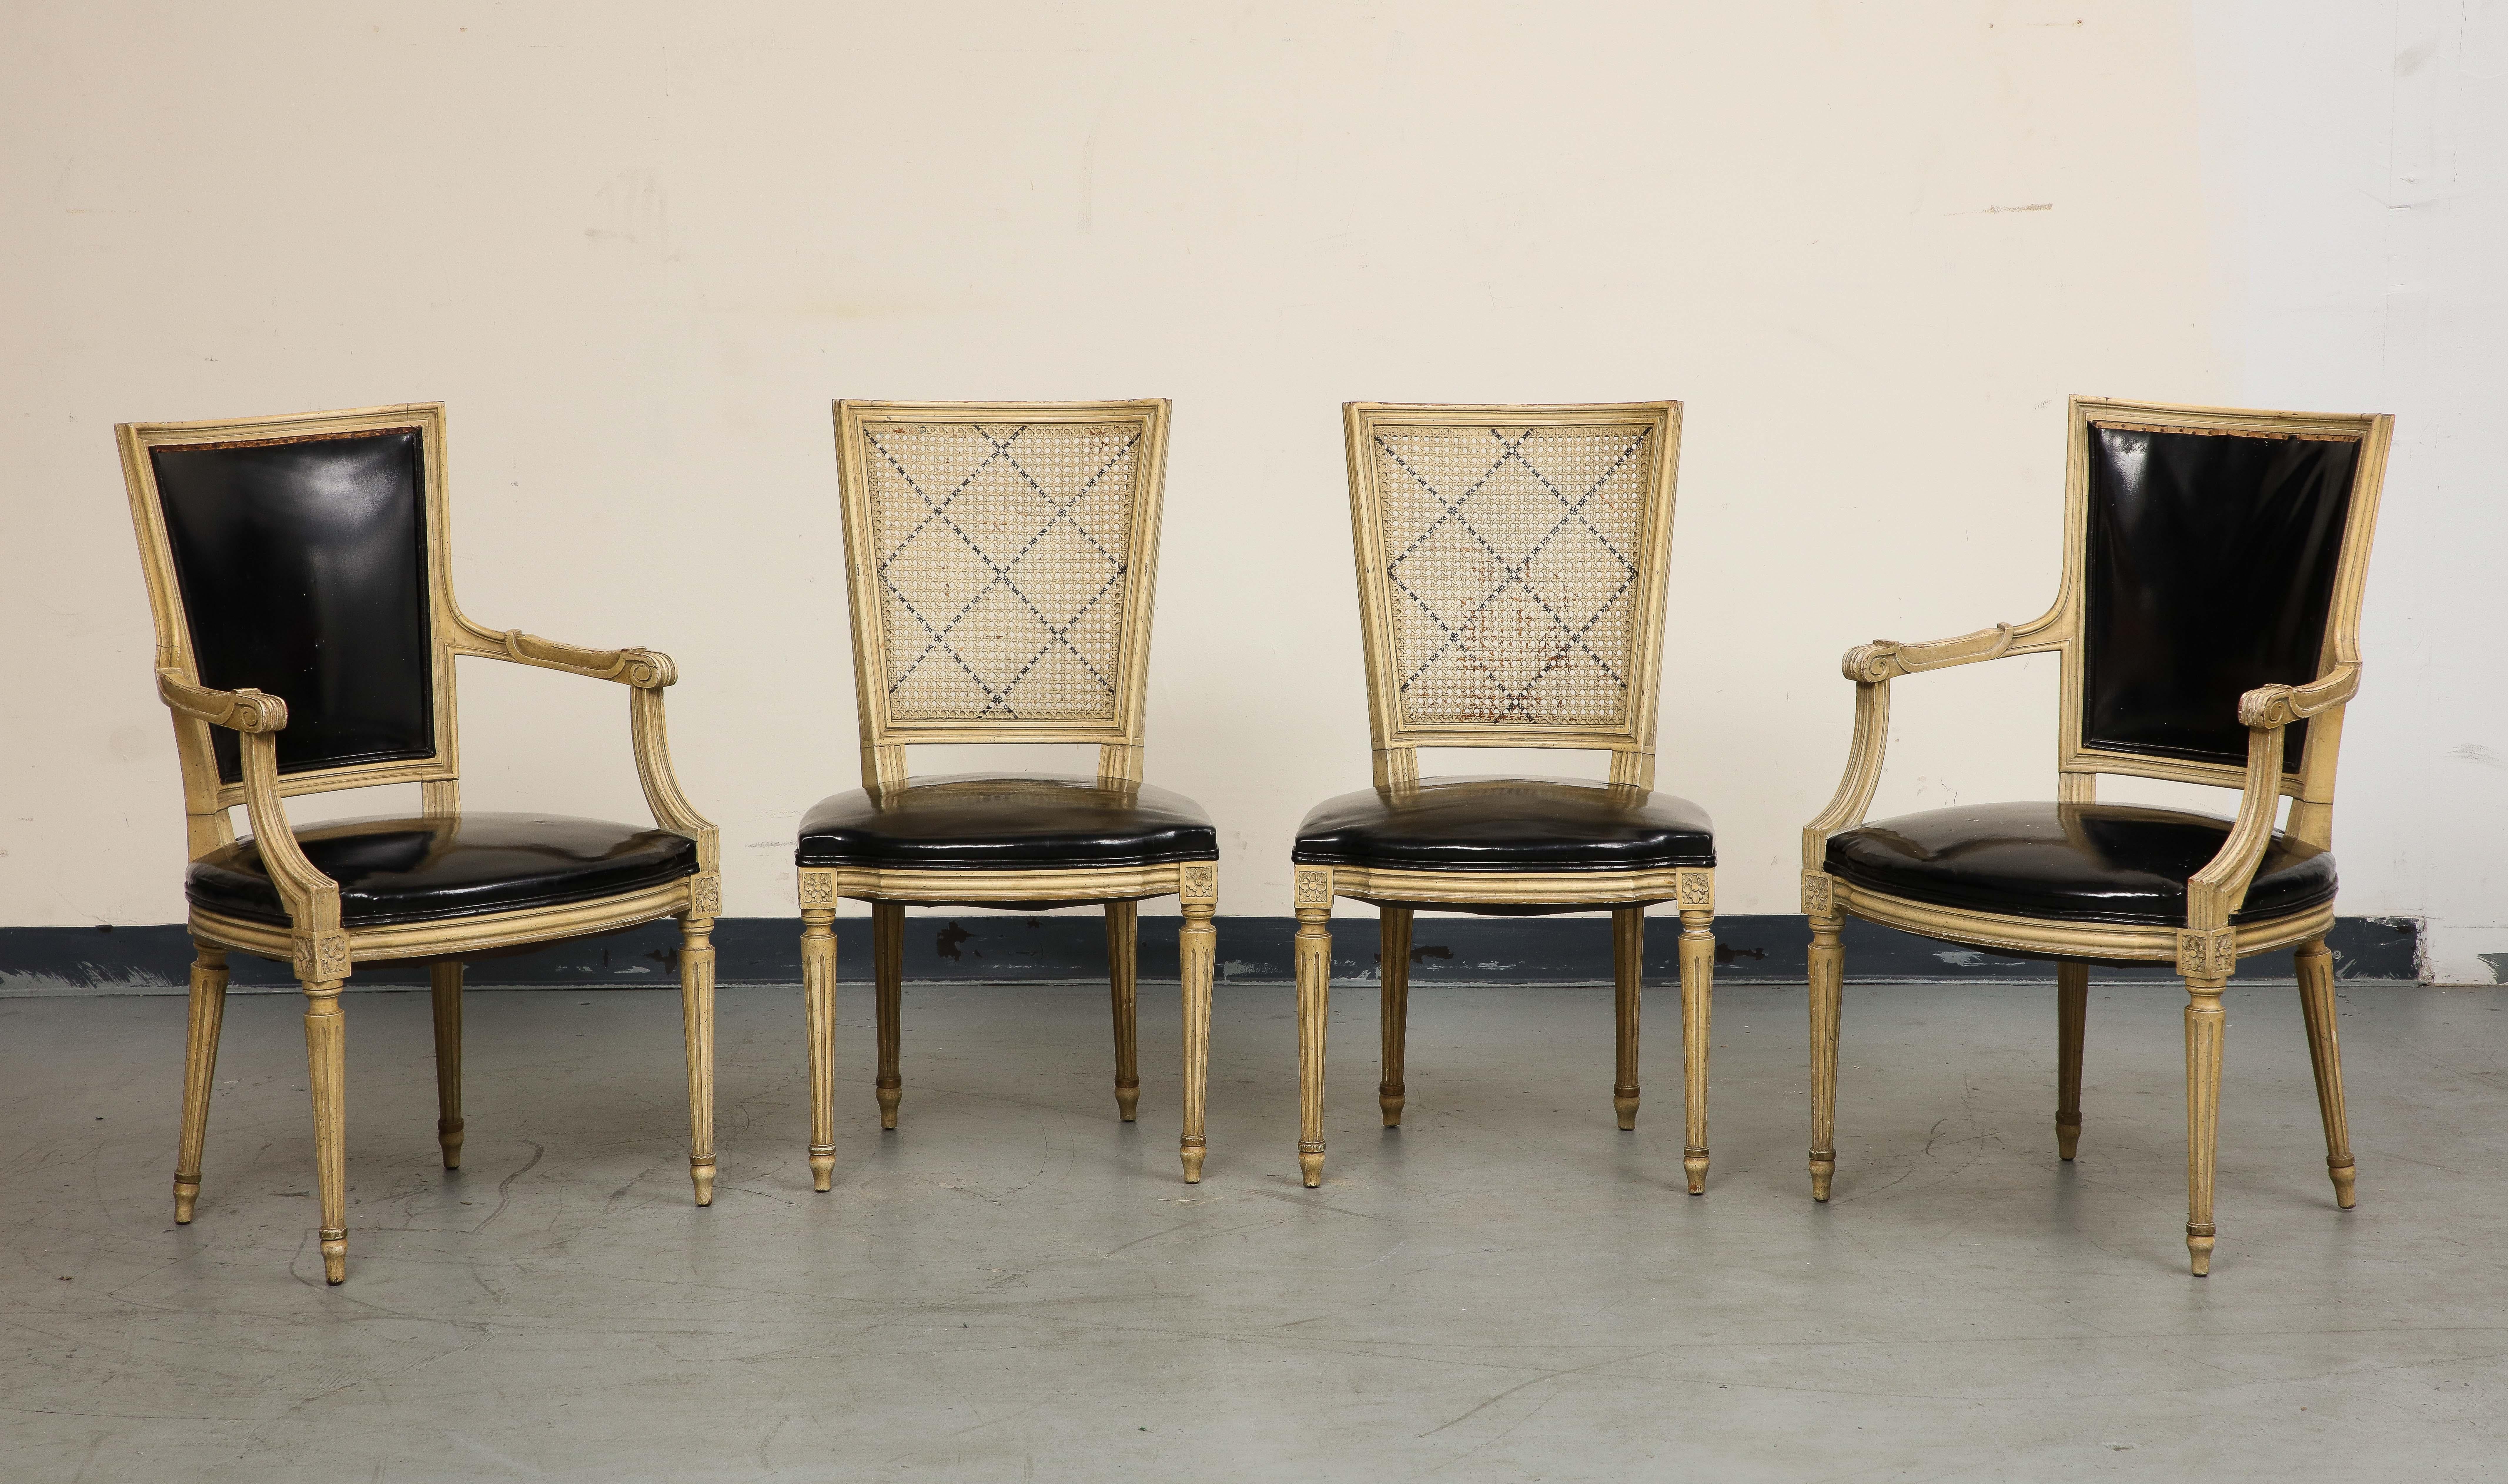 Un bel ensemble de quatre (4) chaises françaises du milieu du siècle, vers 1940, dans le style Louis XVI. Une paire de fauteuils avec des sièges et des dossiers en faux cuir noir est associée à une paire de chaises latérales avec d'élégants dossiers